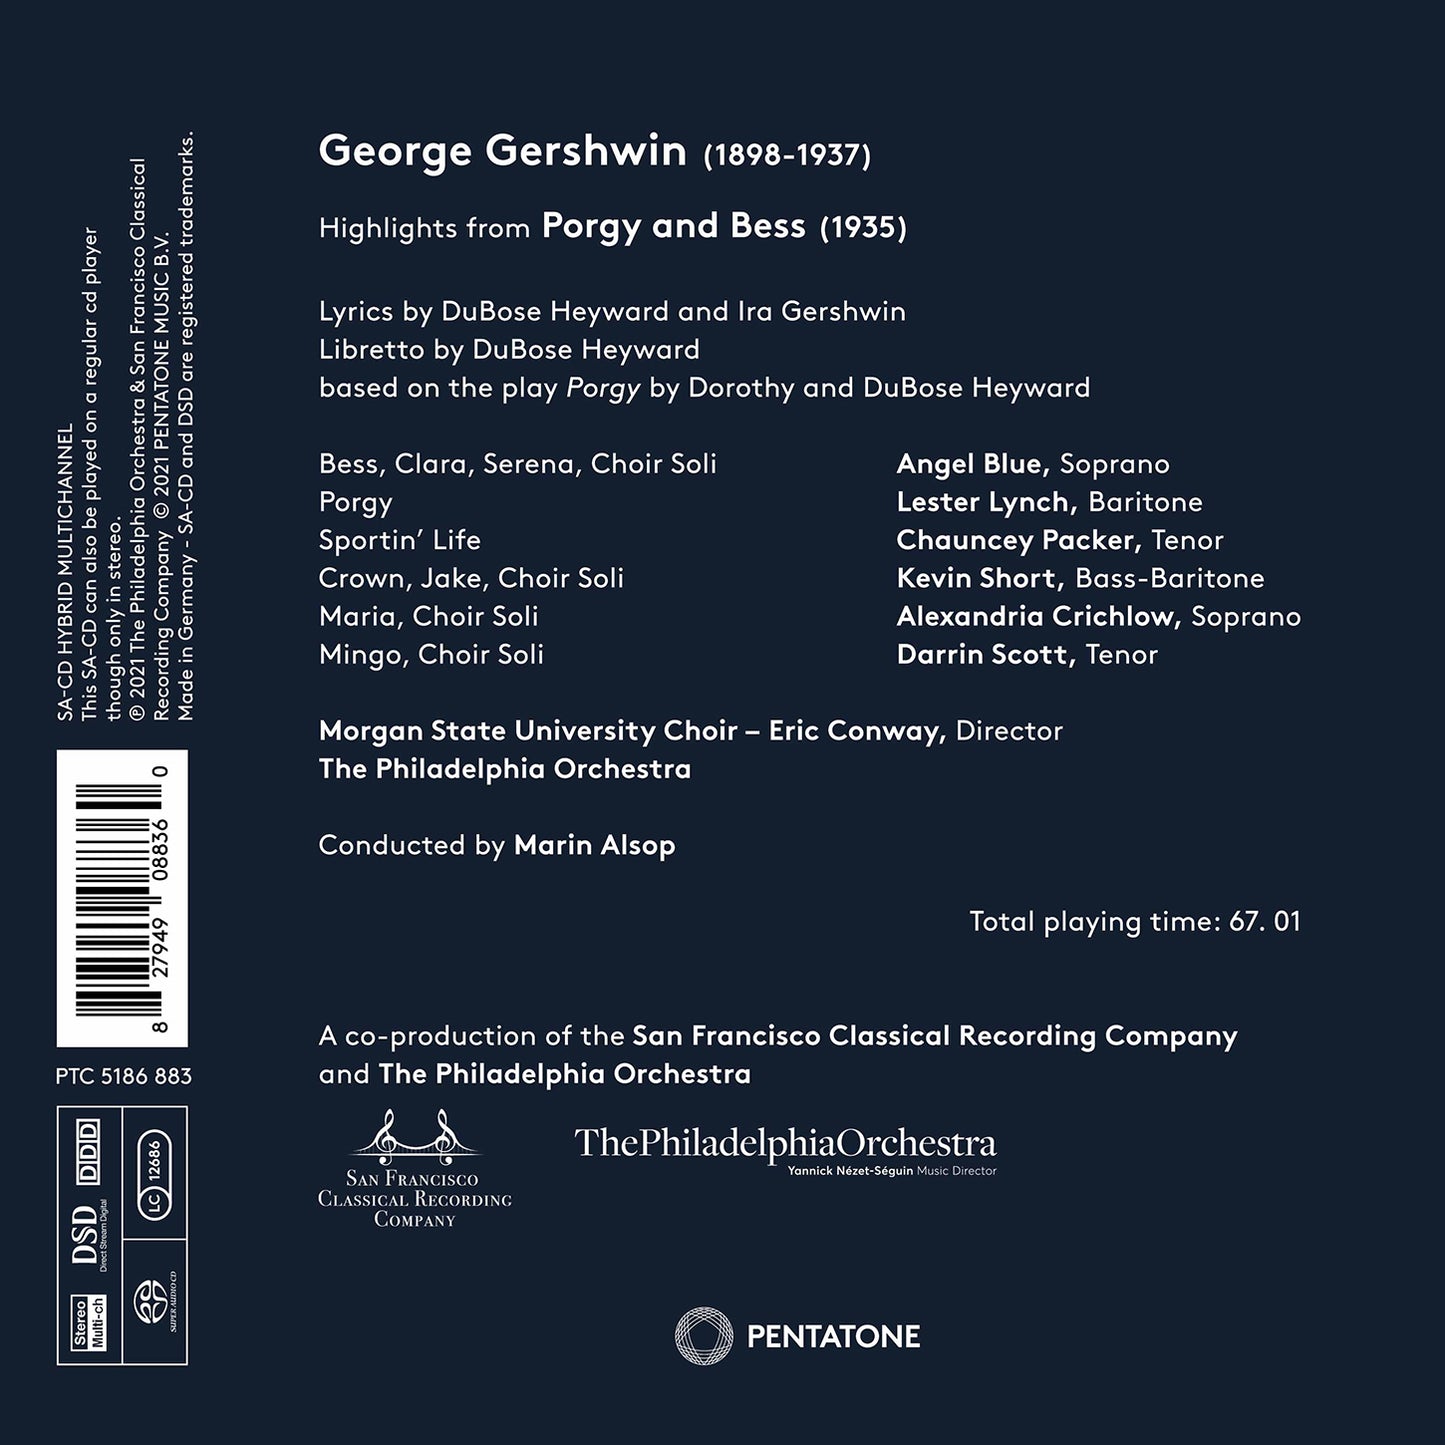 Gershwin: Porgy & Bess (Highlights)